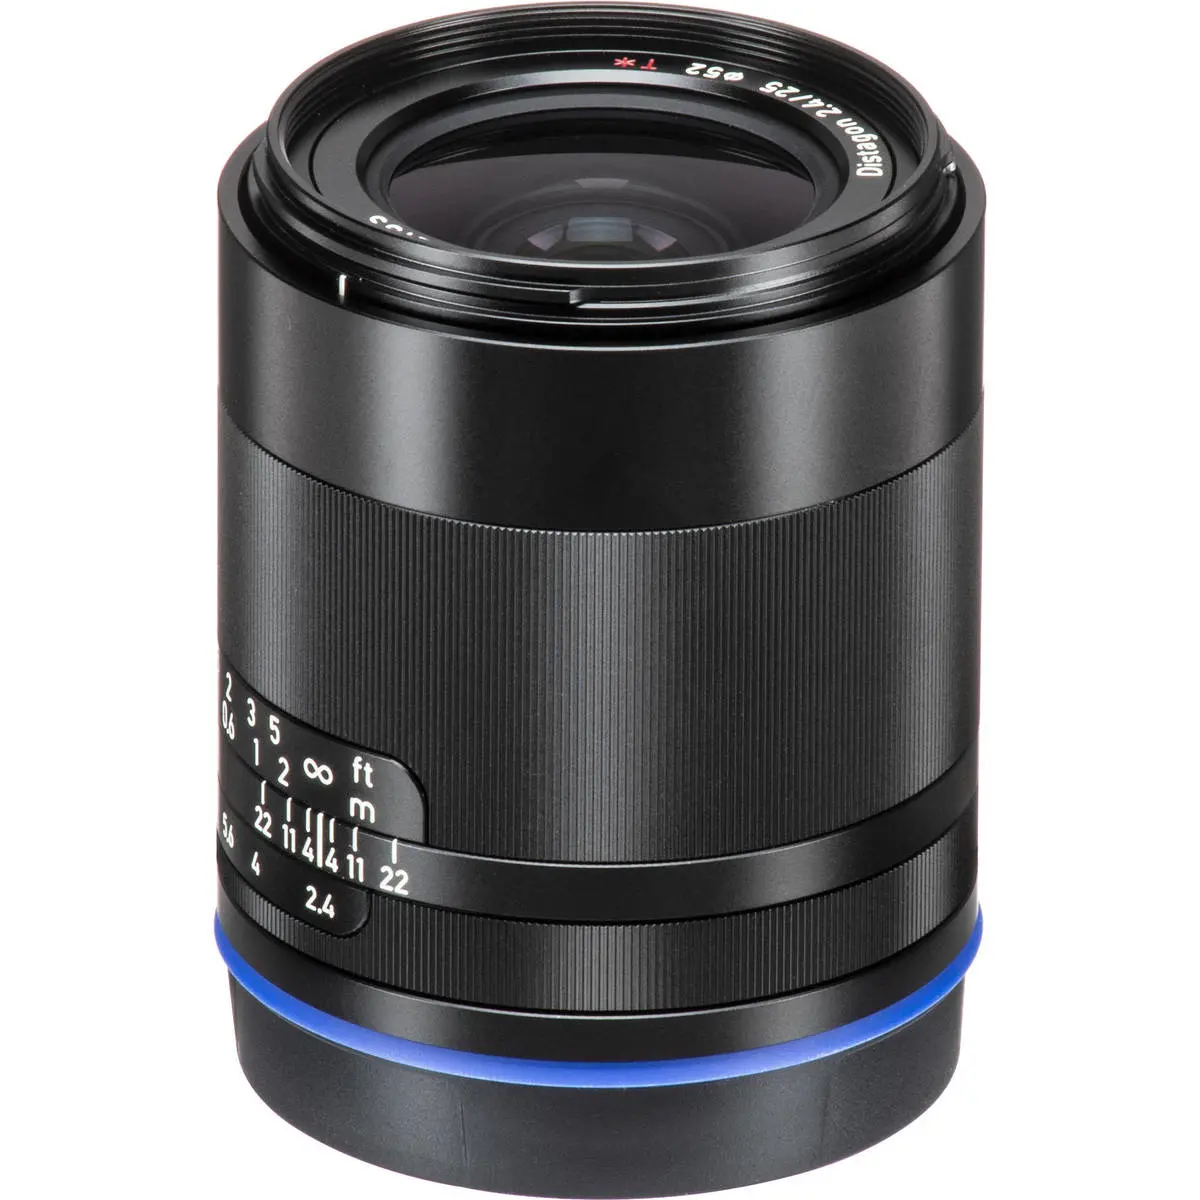 4. Carl Zeiss Loxia 2.4/25 (Sony FE) Lens